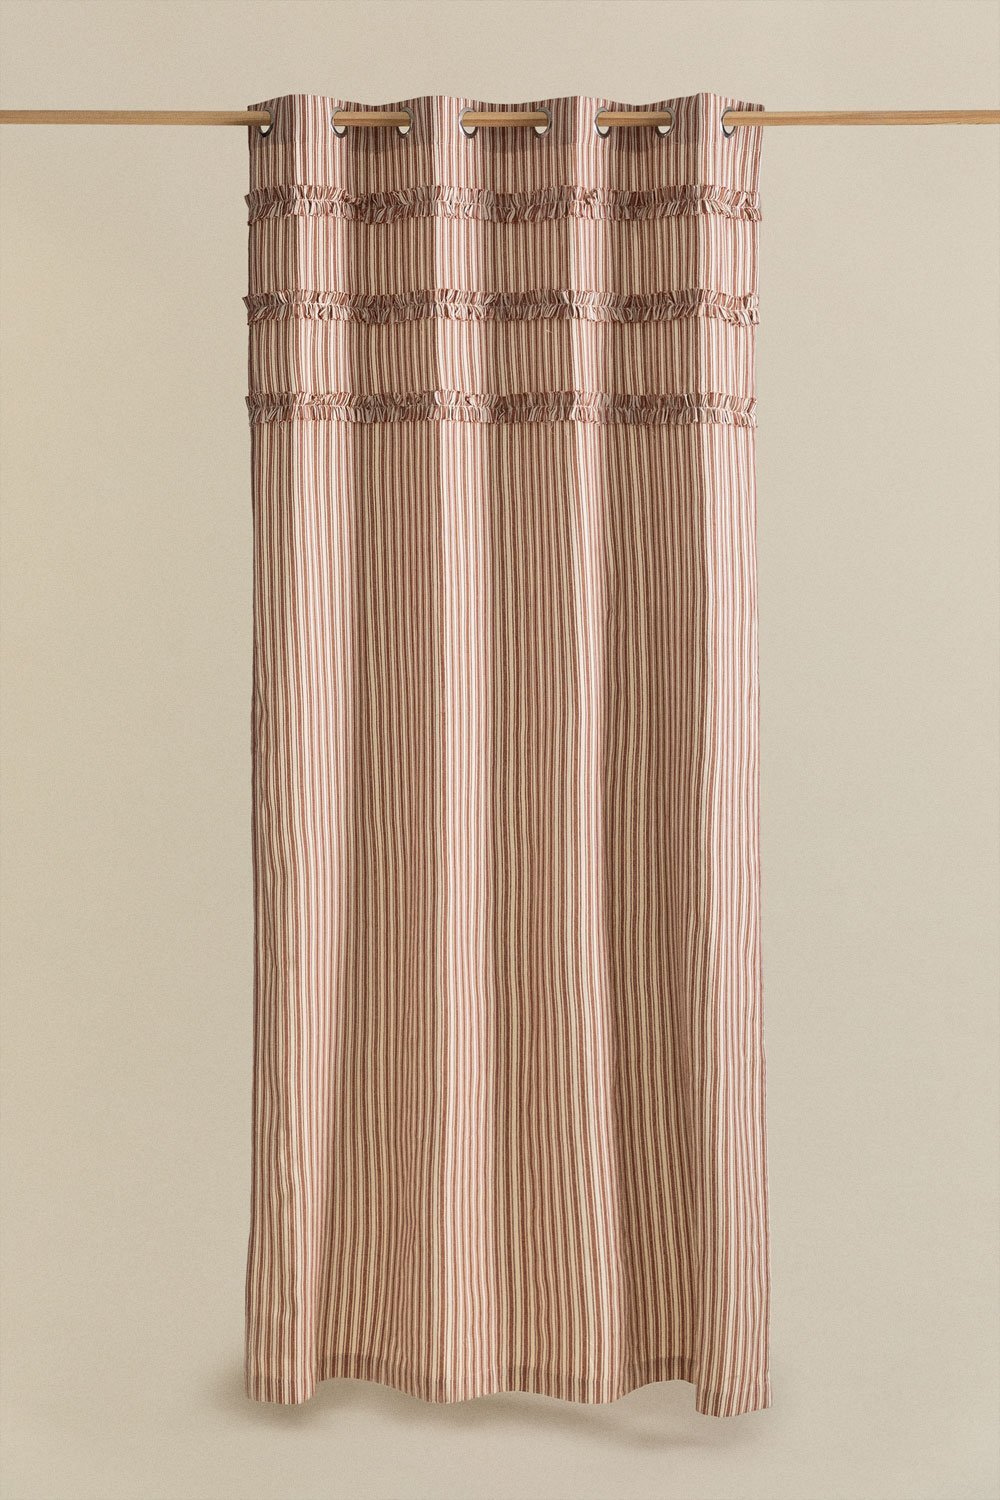 Cortina en Algodón (140x260 cm) Mogrena, imagen de galería 1